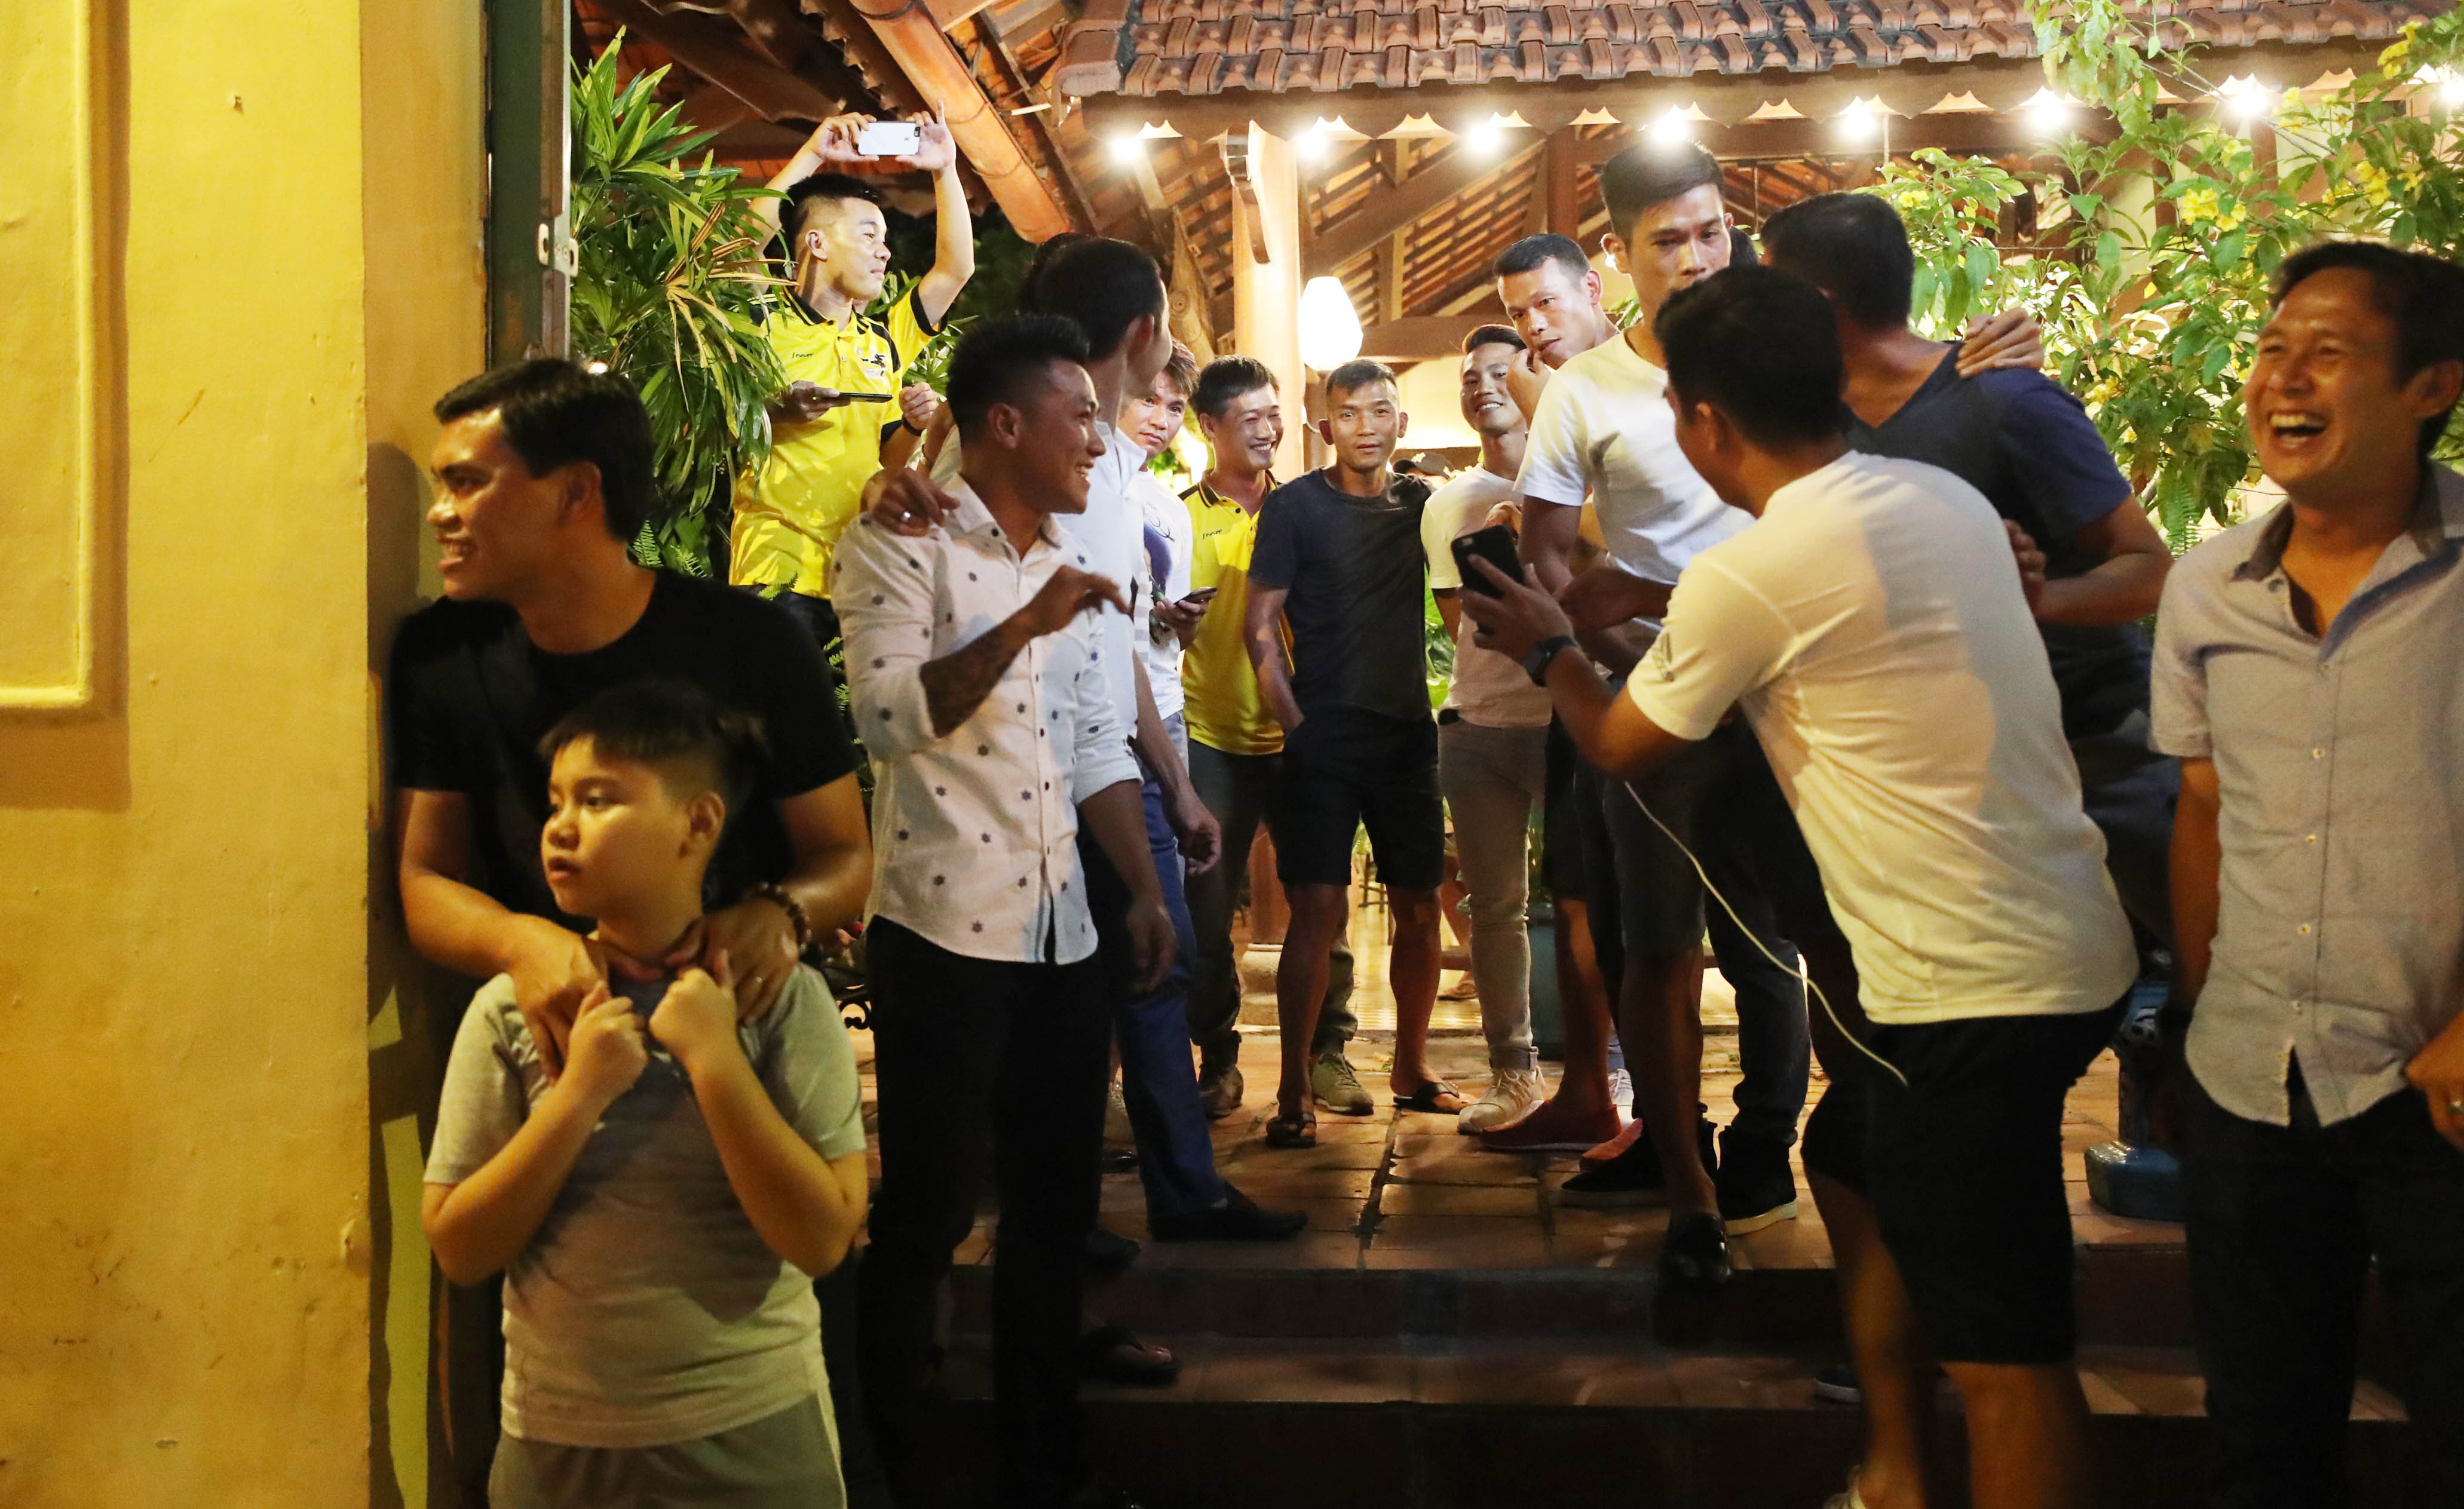 Tối qua 14/11, Tài Em, Minh Phương, Phước Tứ, Việt Thắng, Vũ Phong... xếp hàng bên ngoài một nhà hàng ở TP HCM để chờ sự xuất hiện của một nhân vật đặc biệt. 